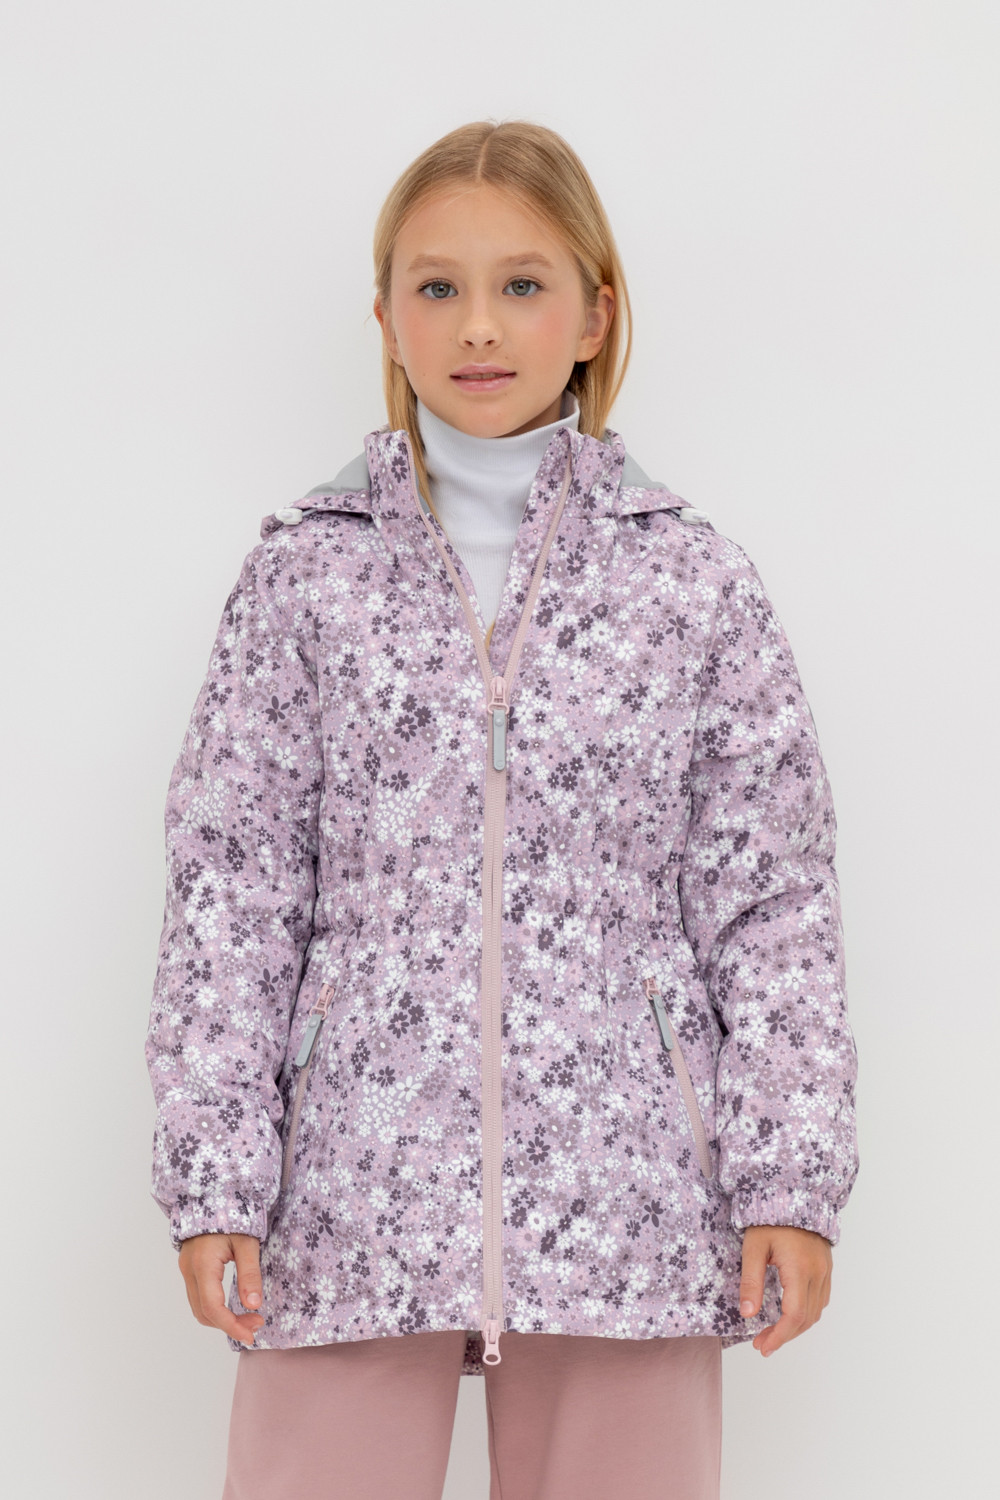 Куртка детская CROCKID 1G JKT 024.1, ледяная орхидея, текстура цветов, 128